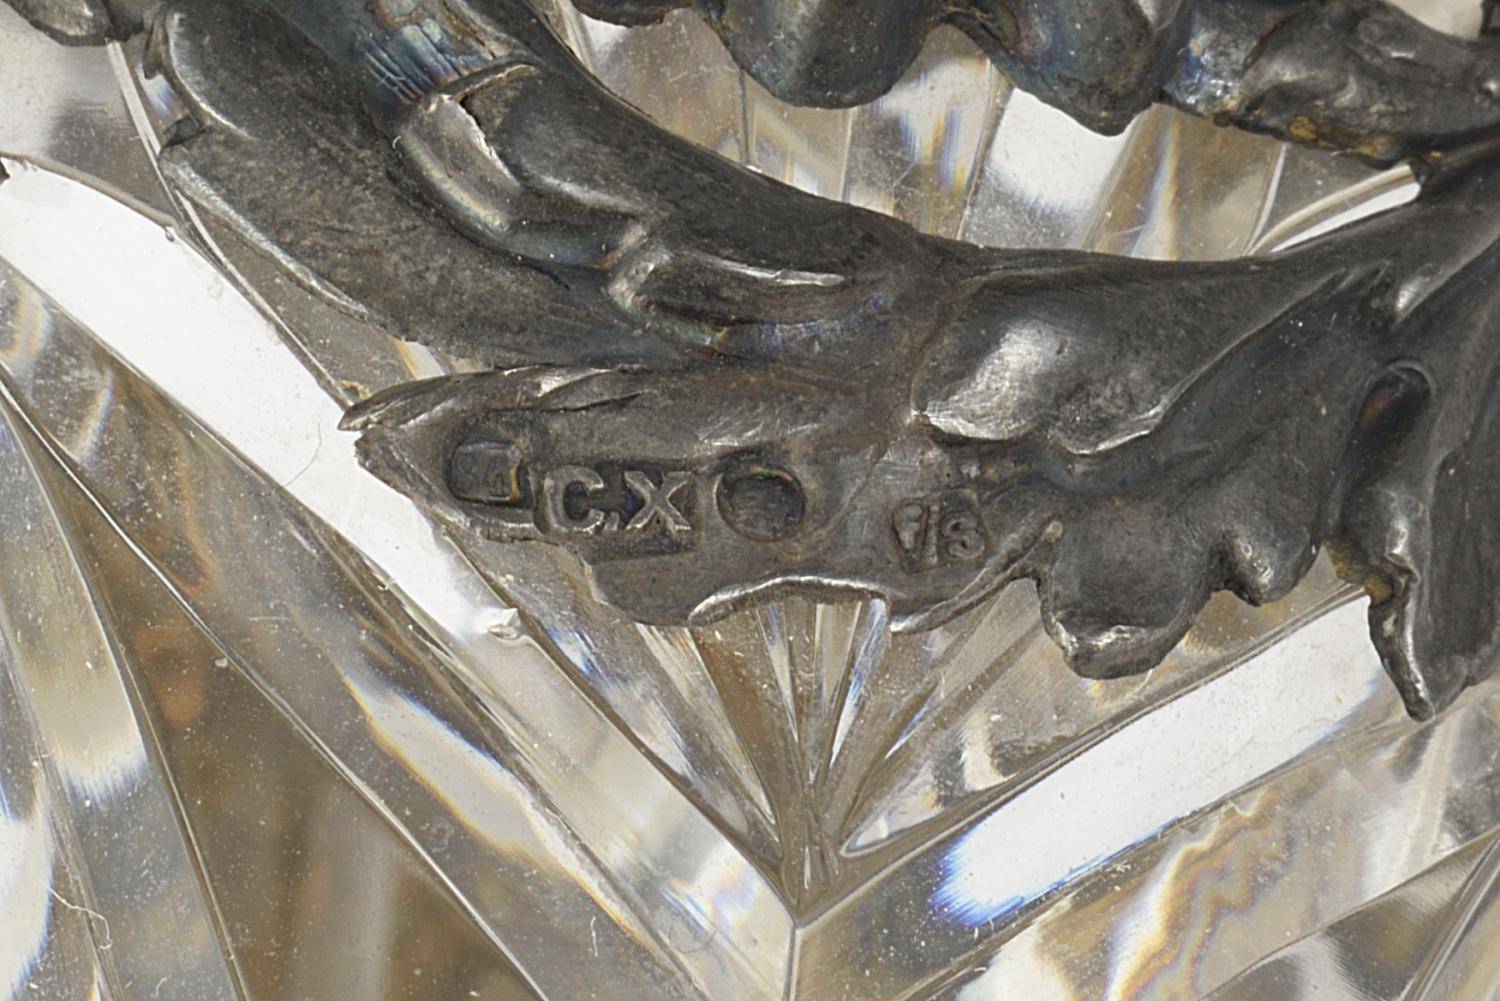 Пара ваз из хрусталя в серебре 84 пробы 19 века